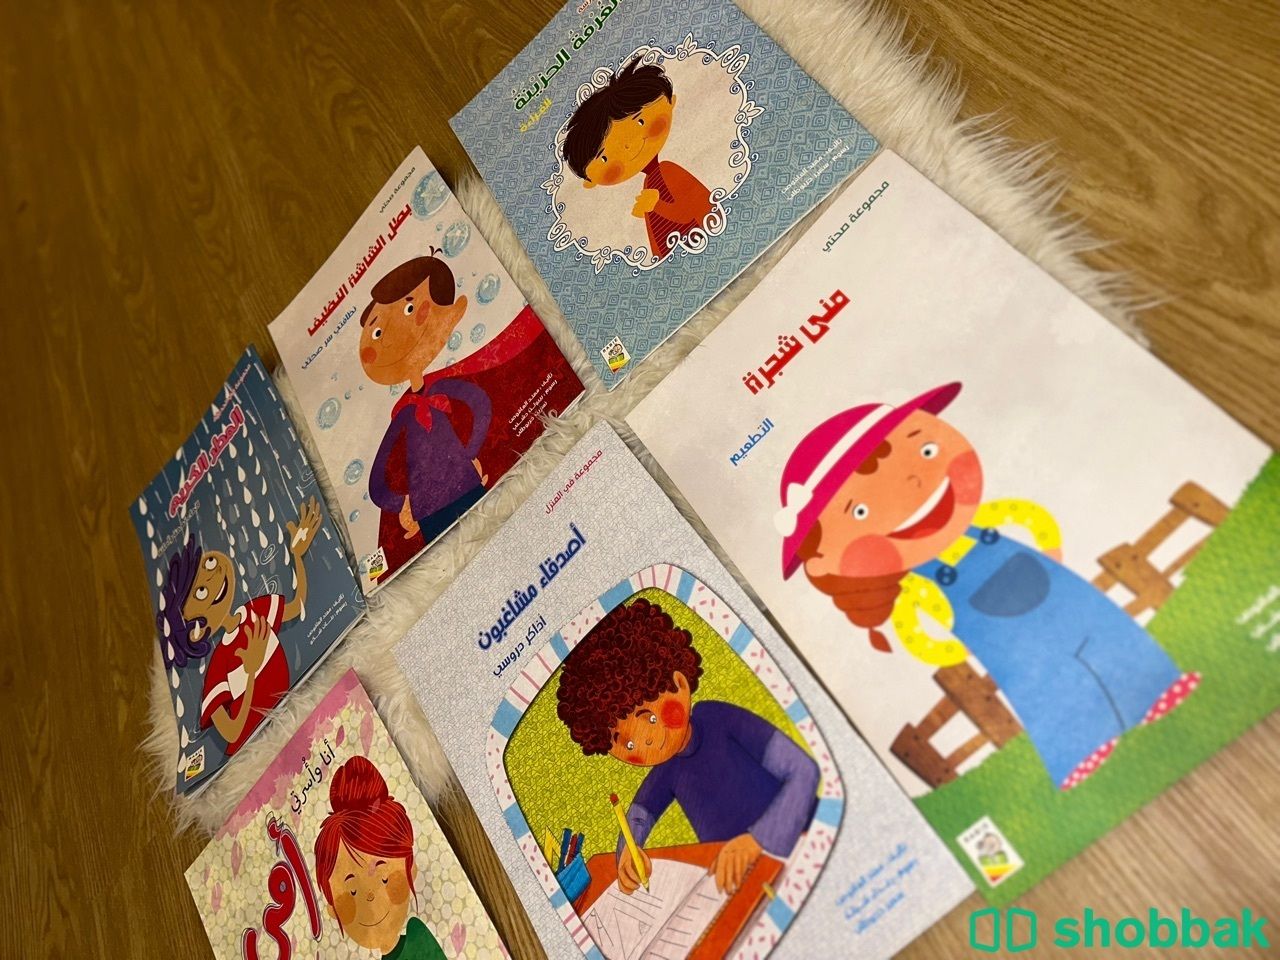 مجموعة قصص سلوكية للأطفال كبيرة الحجم من دار ربيع  شباك السعودية